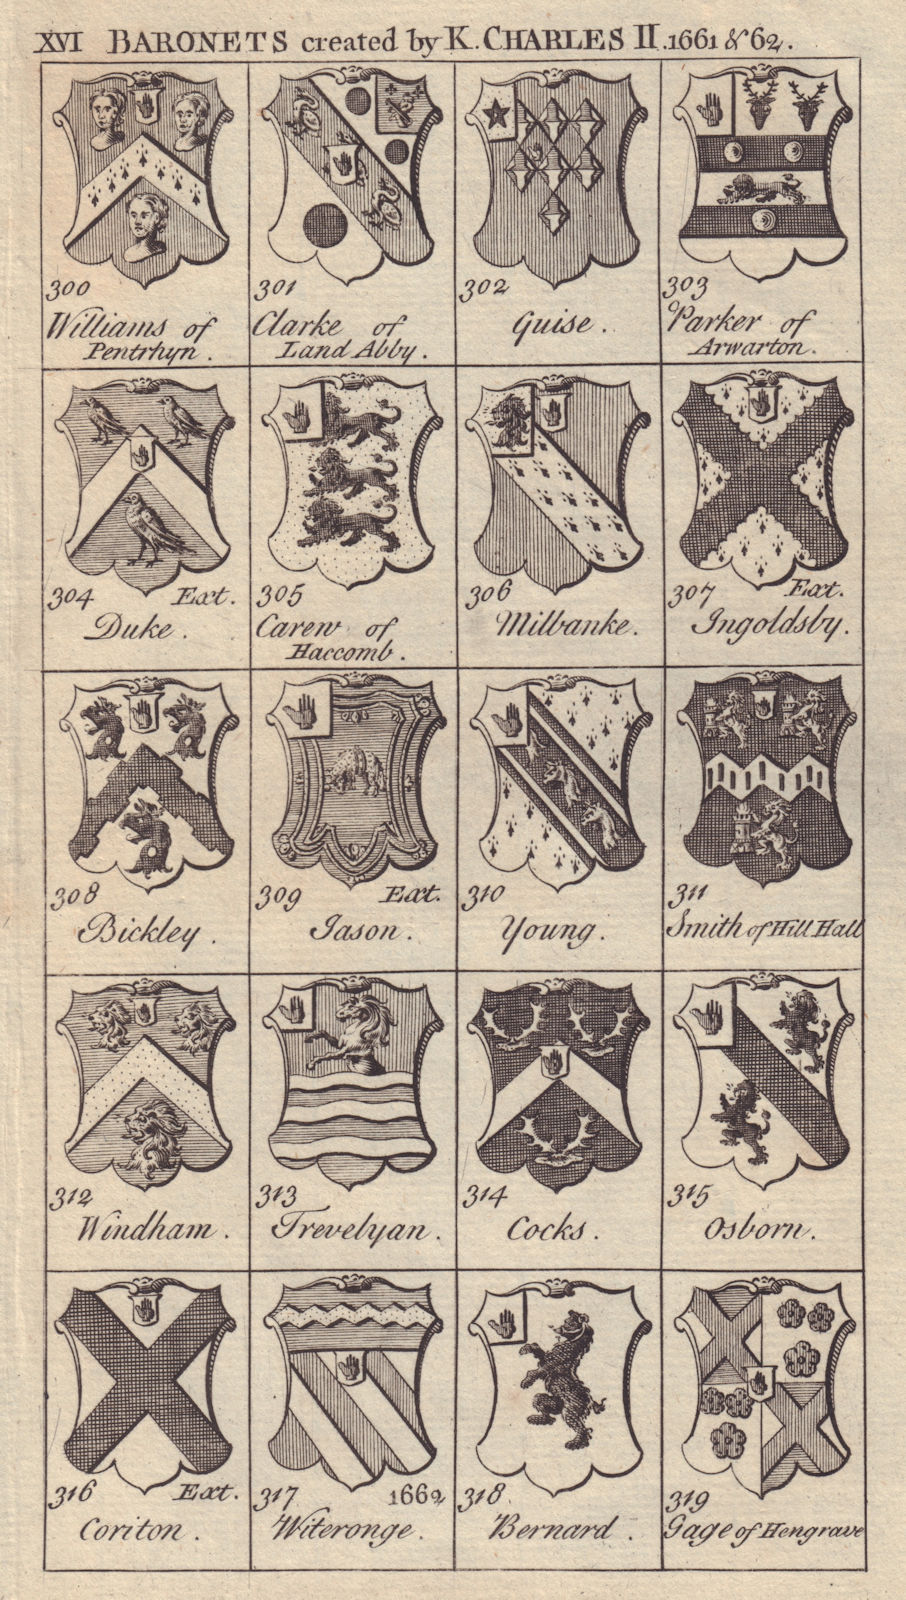 Charles II Baronets 1661-62 Guise Duke Milbanke Bickley Jason Young Cocks… 1753